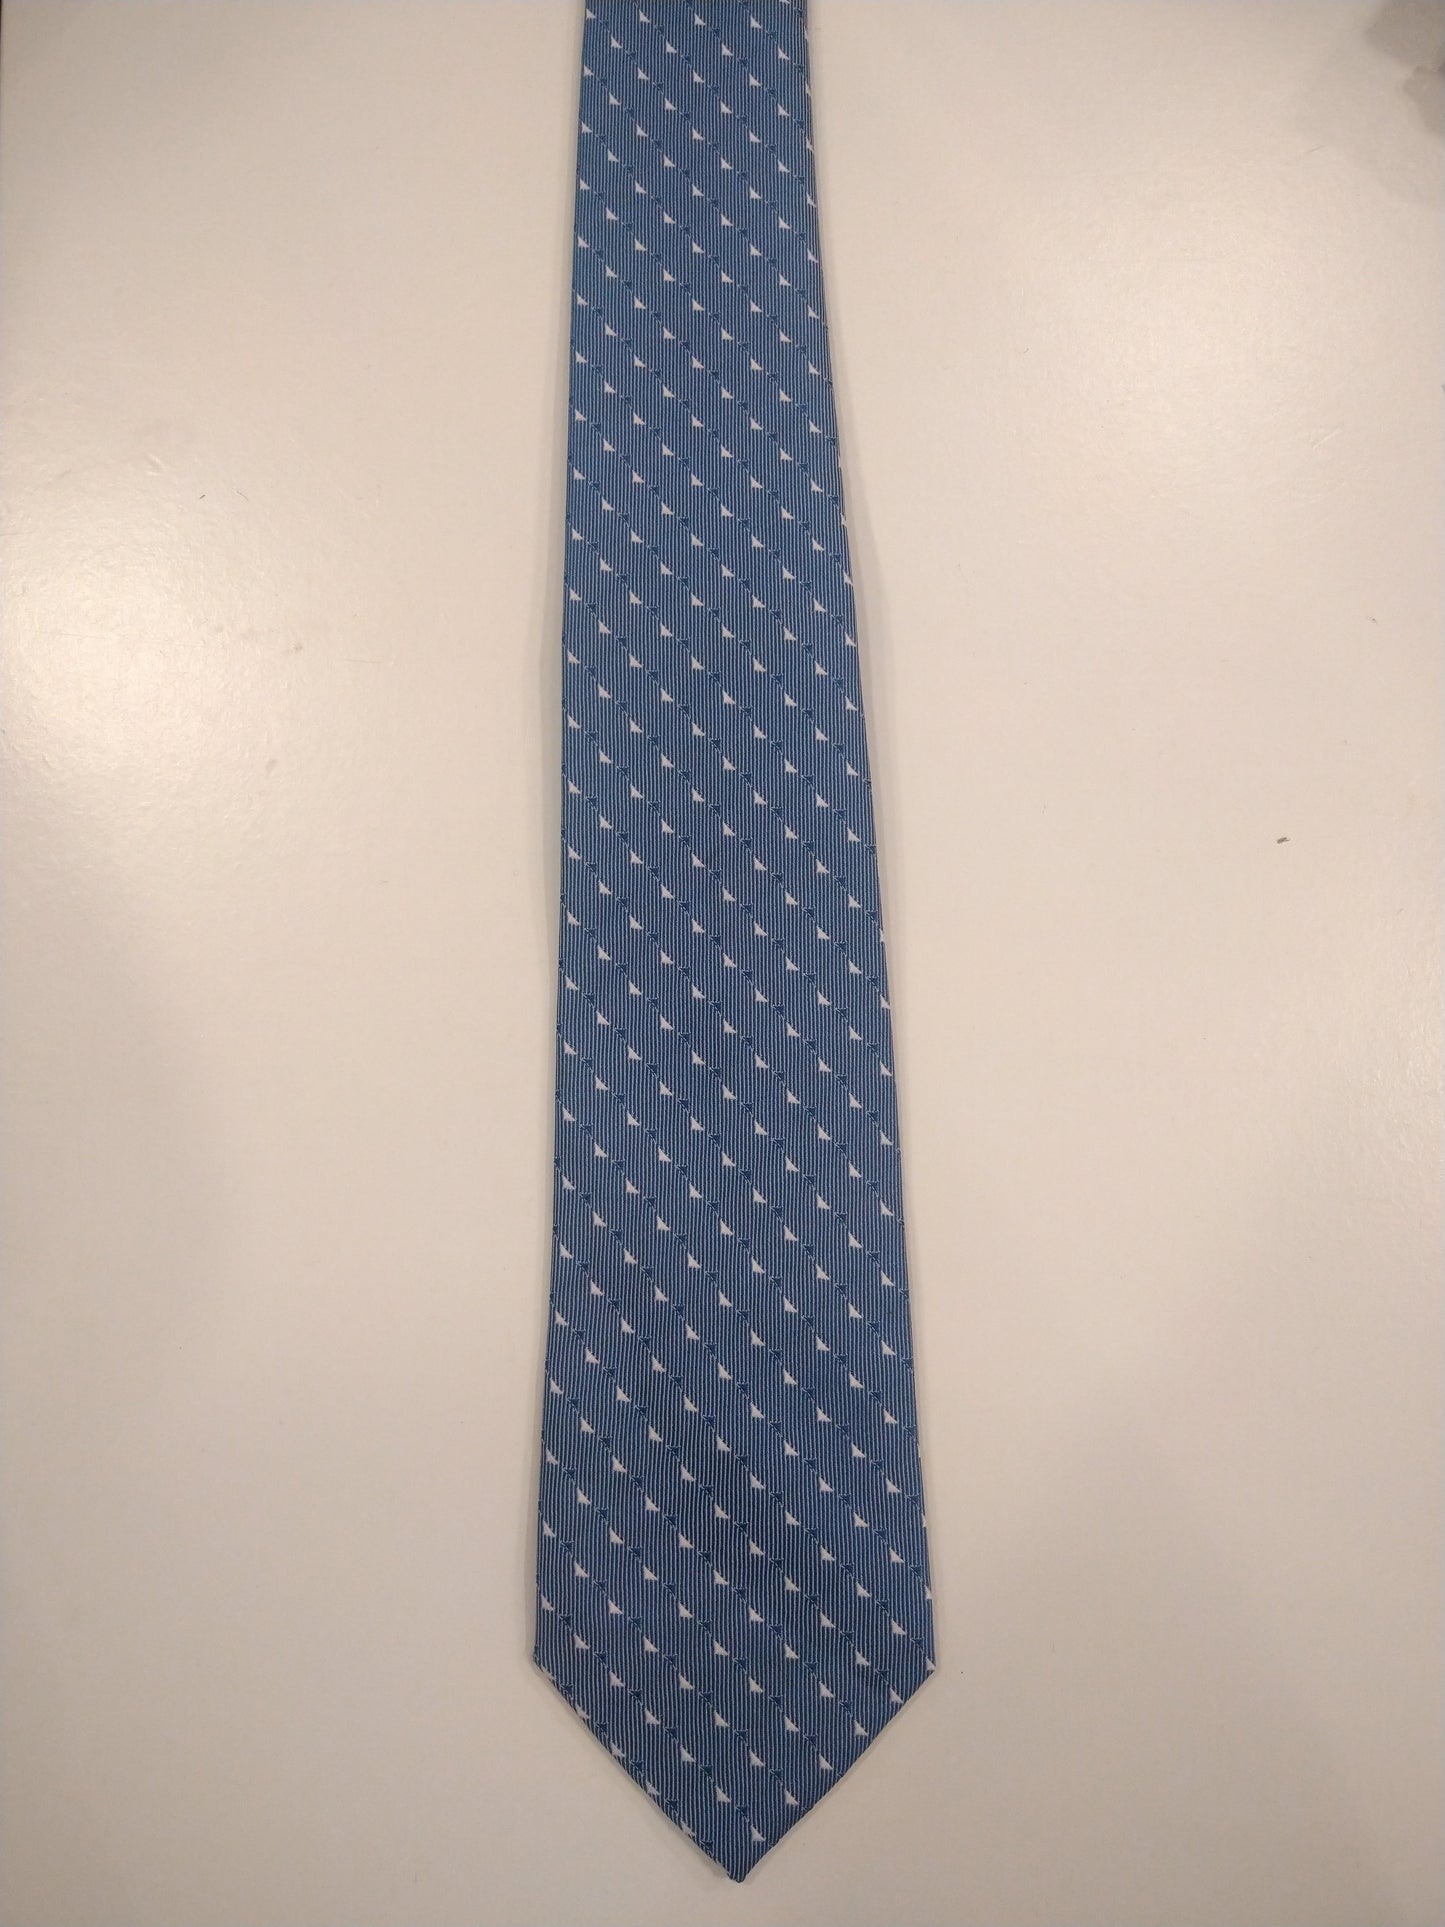 Polyester stropdas. Blauw wit motief.